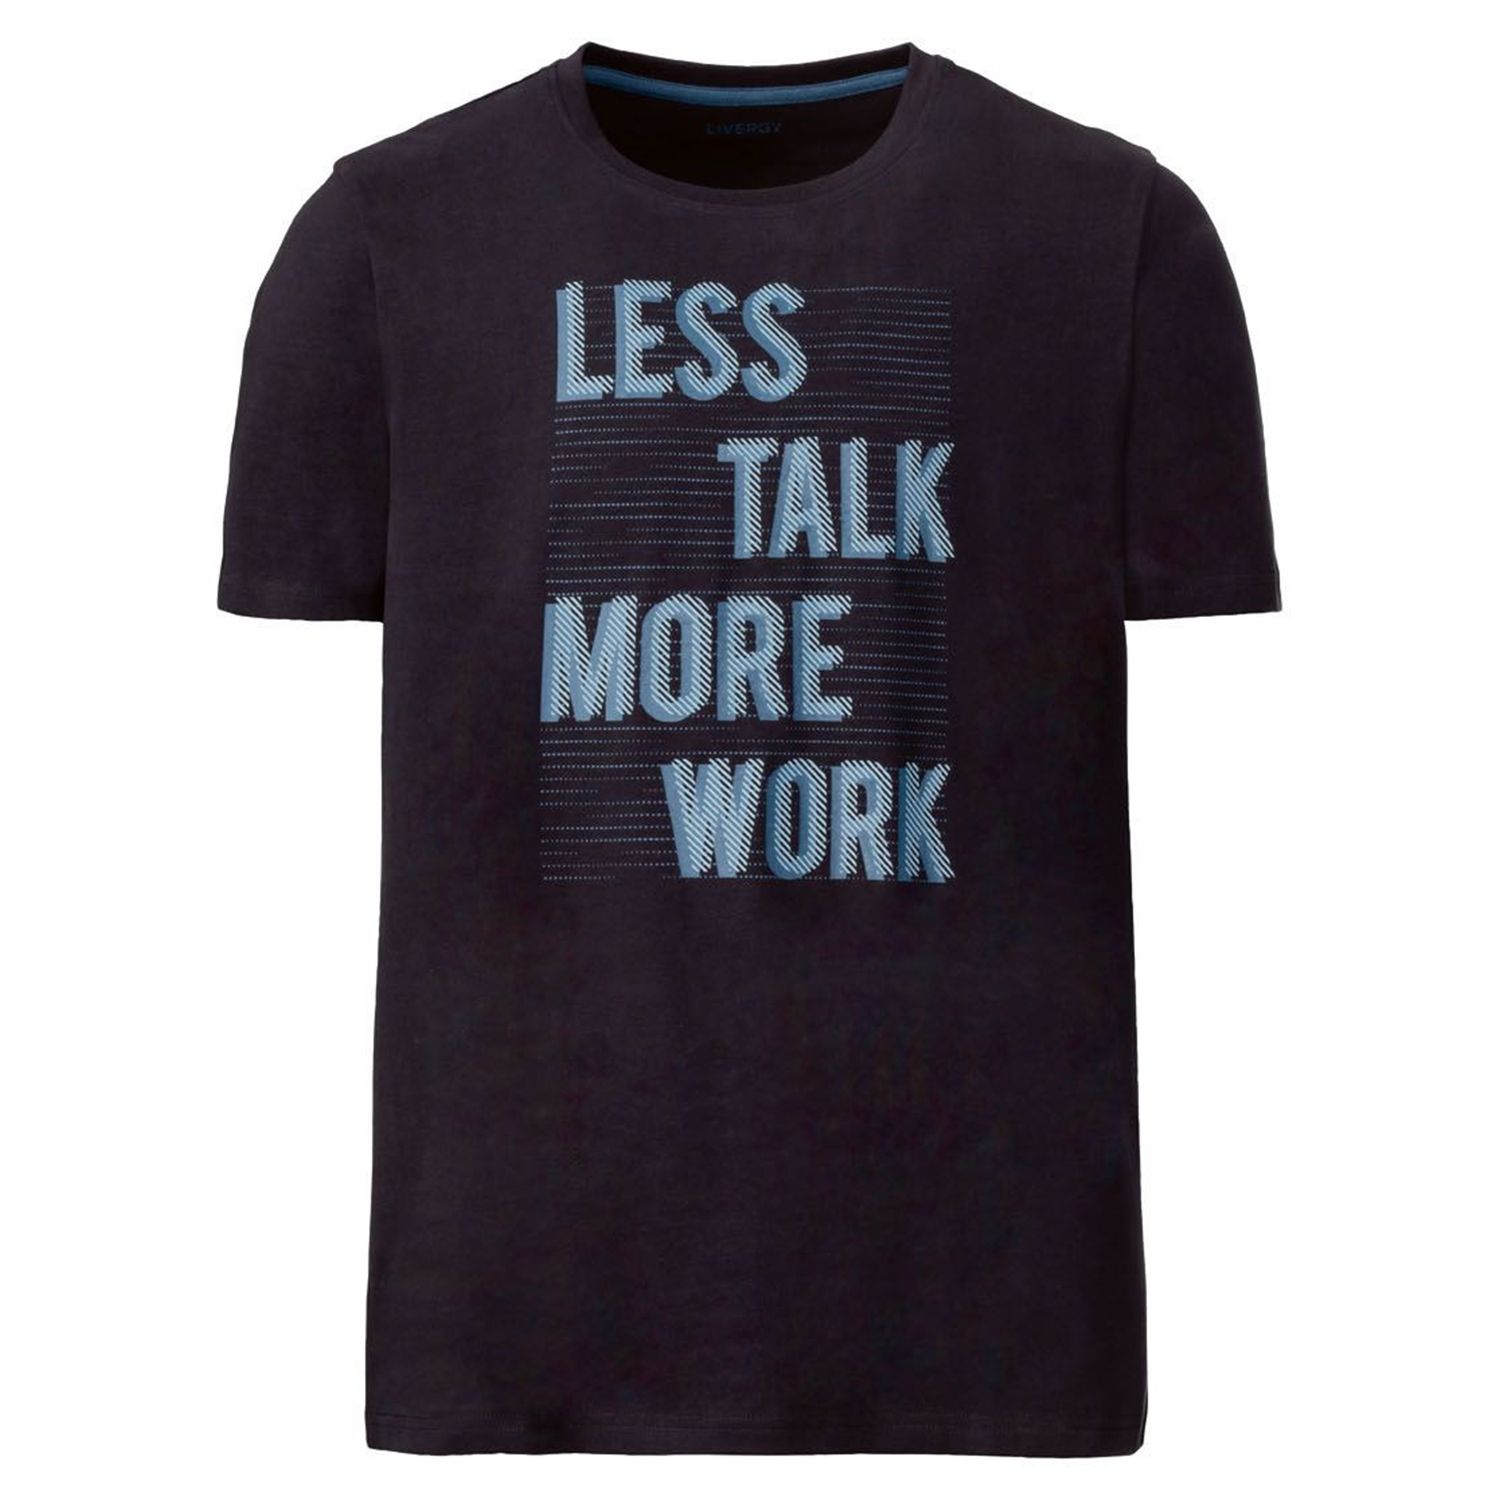 تی شرت آستین کوتاه مردانه لیورجی مدل LessTalkMoreWrok رنگ مشکی